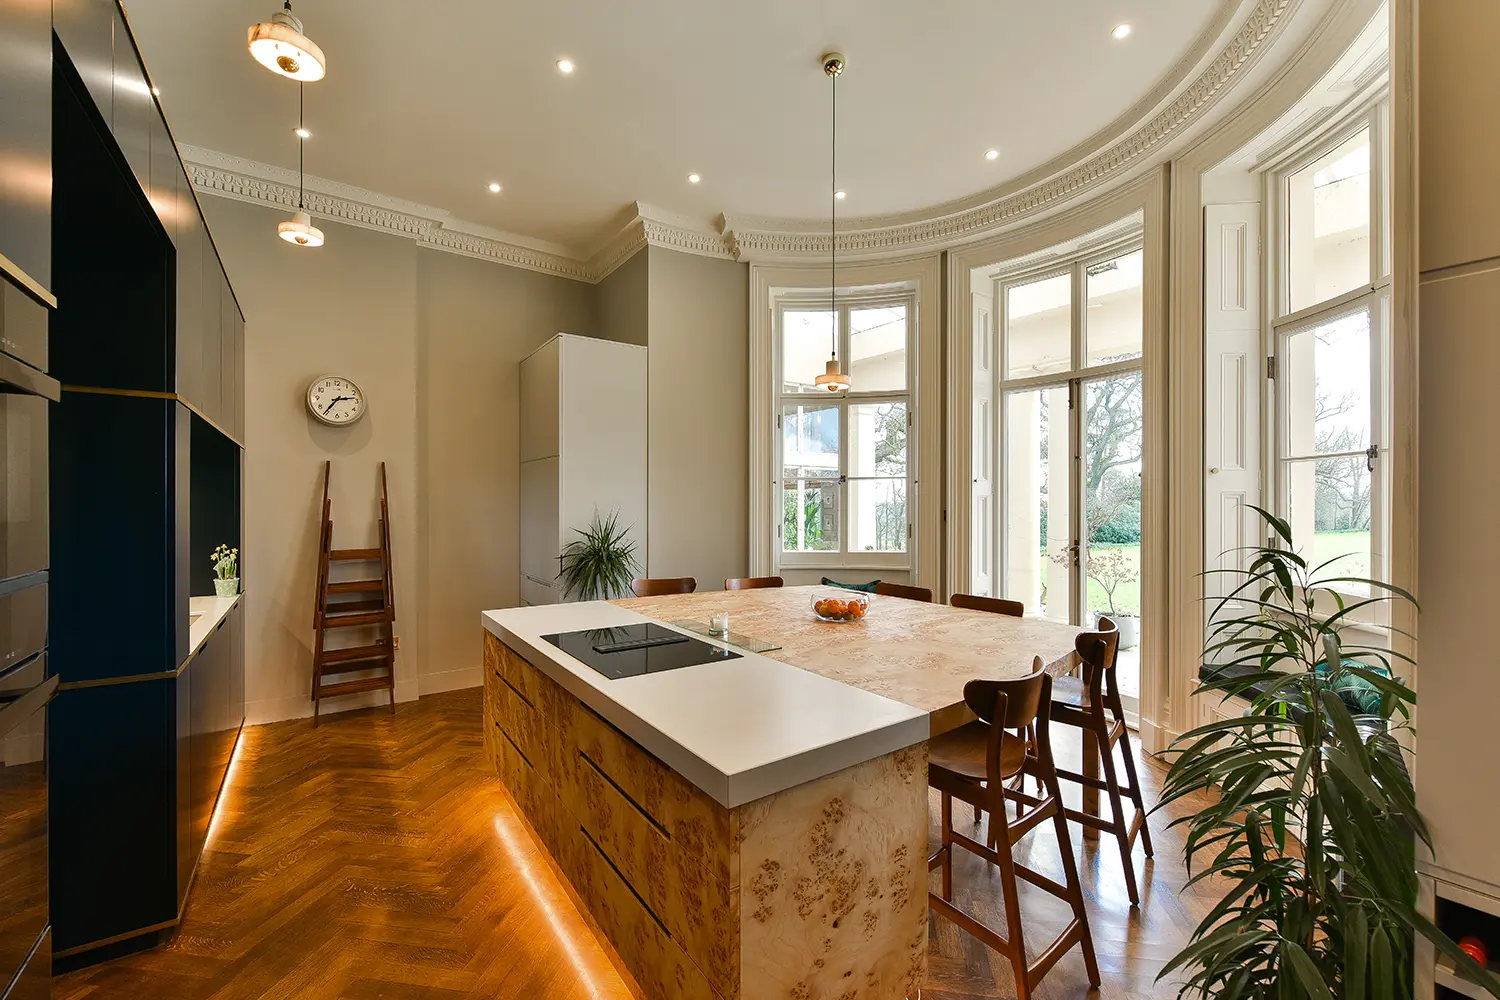 Heathfield Historic Apartment kitchen interior design